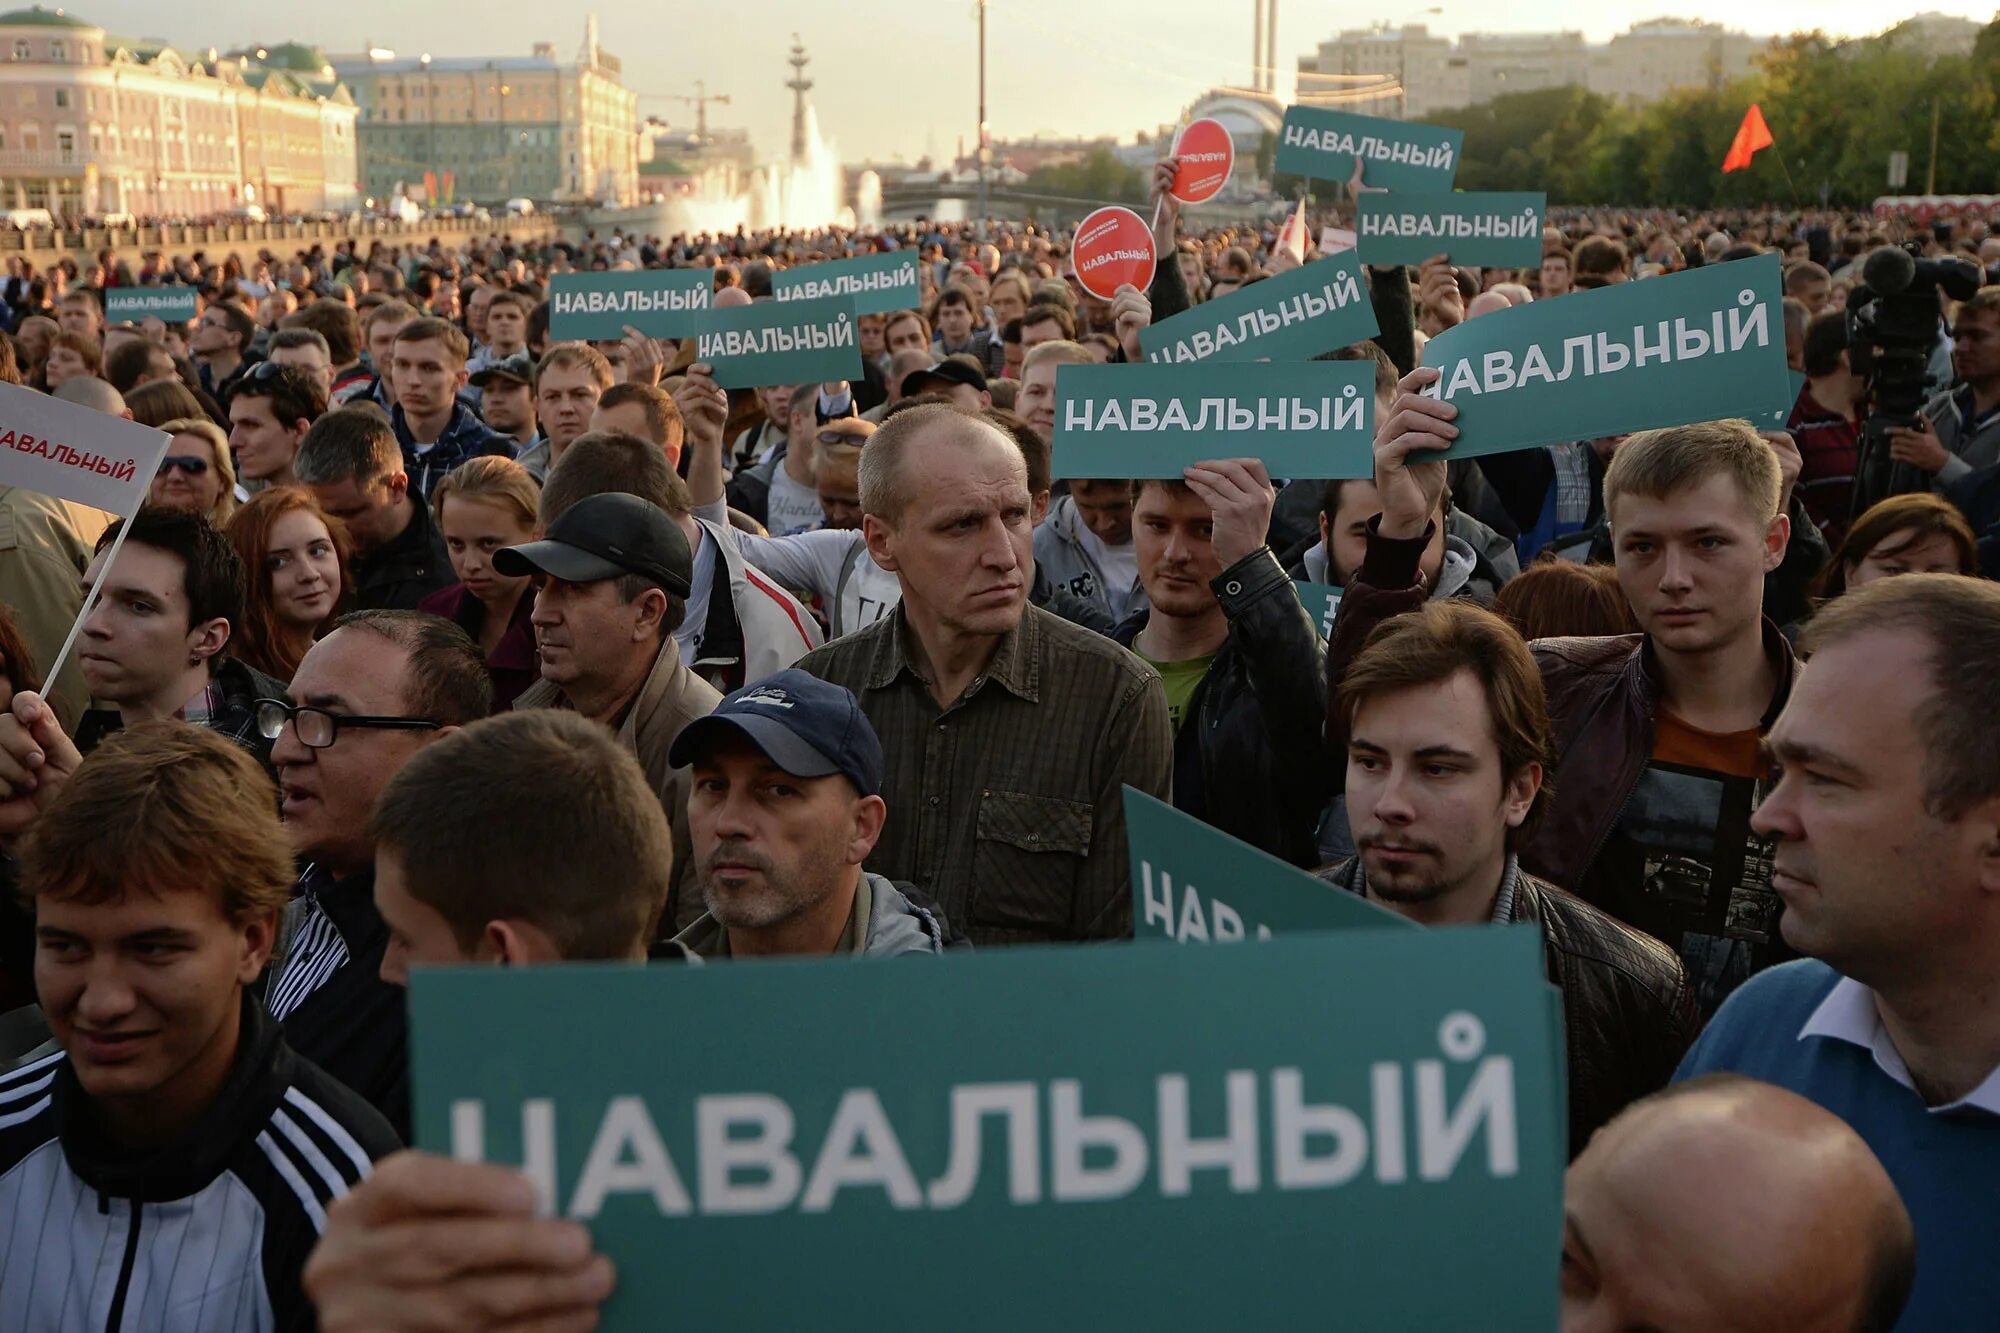 Навальный Болотная площадь. Сторонники Навального. Навальный на Болотной. Политическая оппозиция. Оппозиционные силы перед началом первой